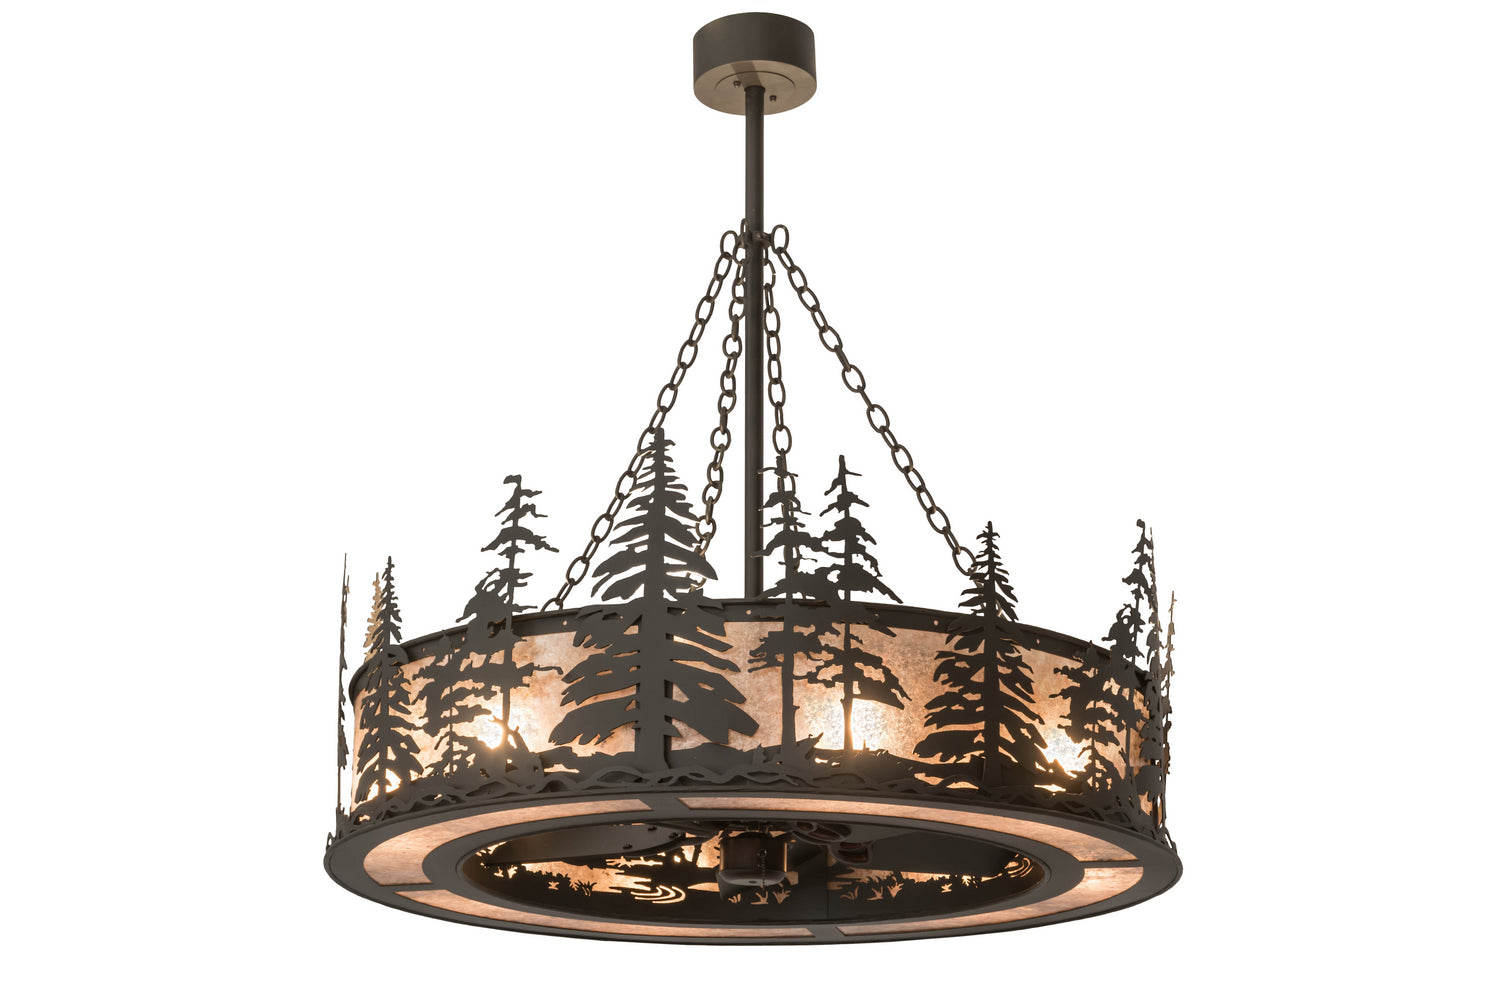 Meyda Tiffany Tall Pines 175914 Ceiling Fan - Oil Rubbed Bronze